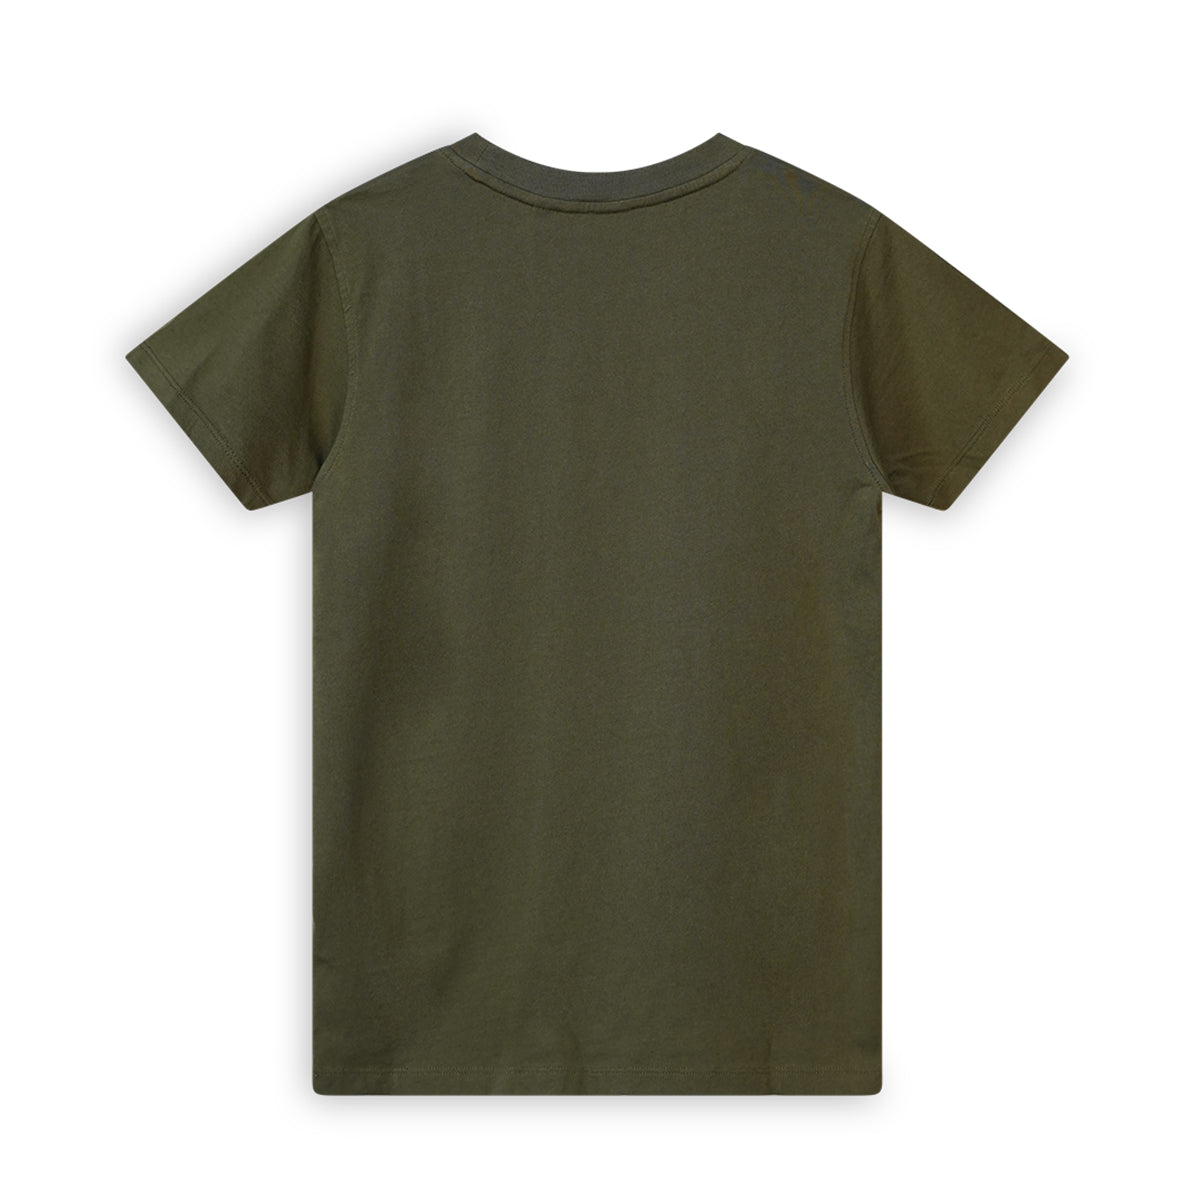 Jongens T-shirt short sleeves van SevenOneSeven in de kleur Khaki Green in maat 170-176.